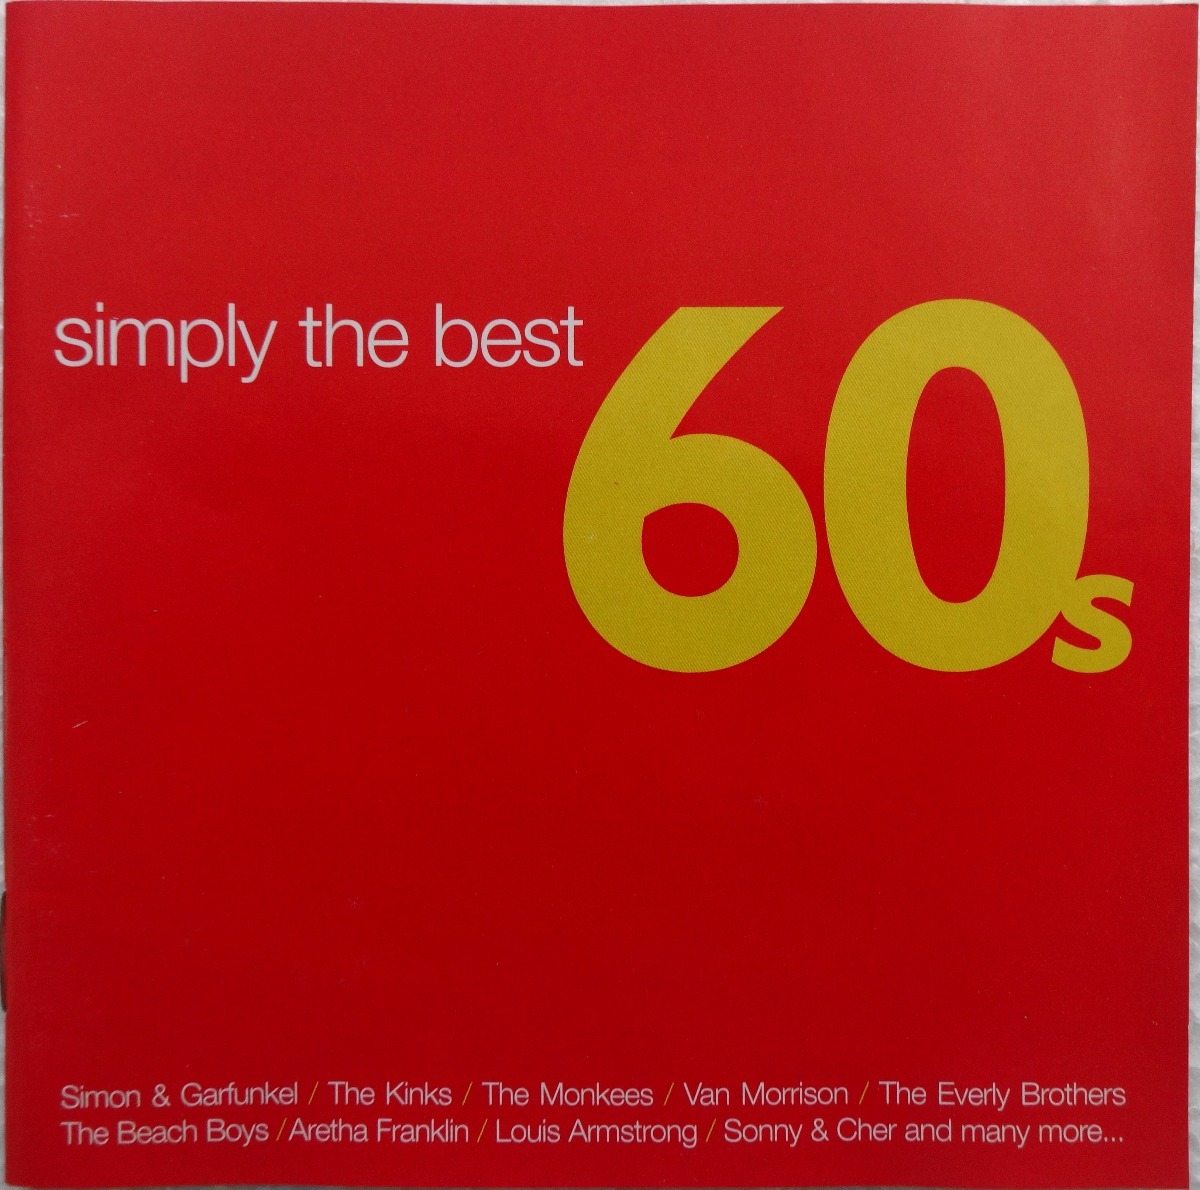 Cd Doble Simply The Best 60s 19900 En Mercado Libre